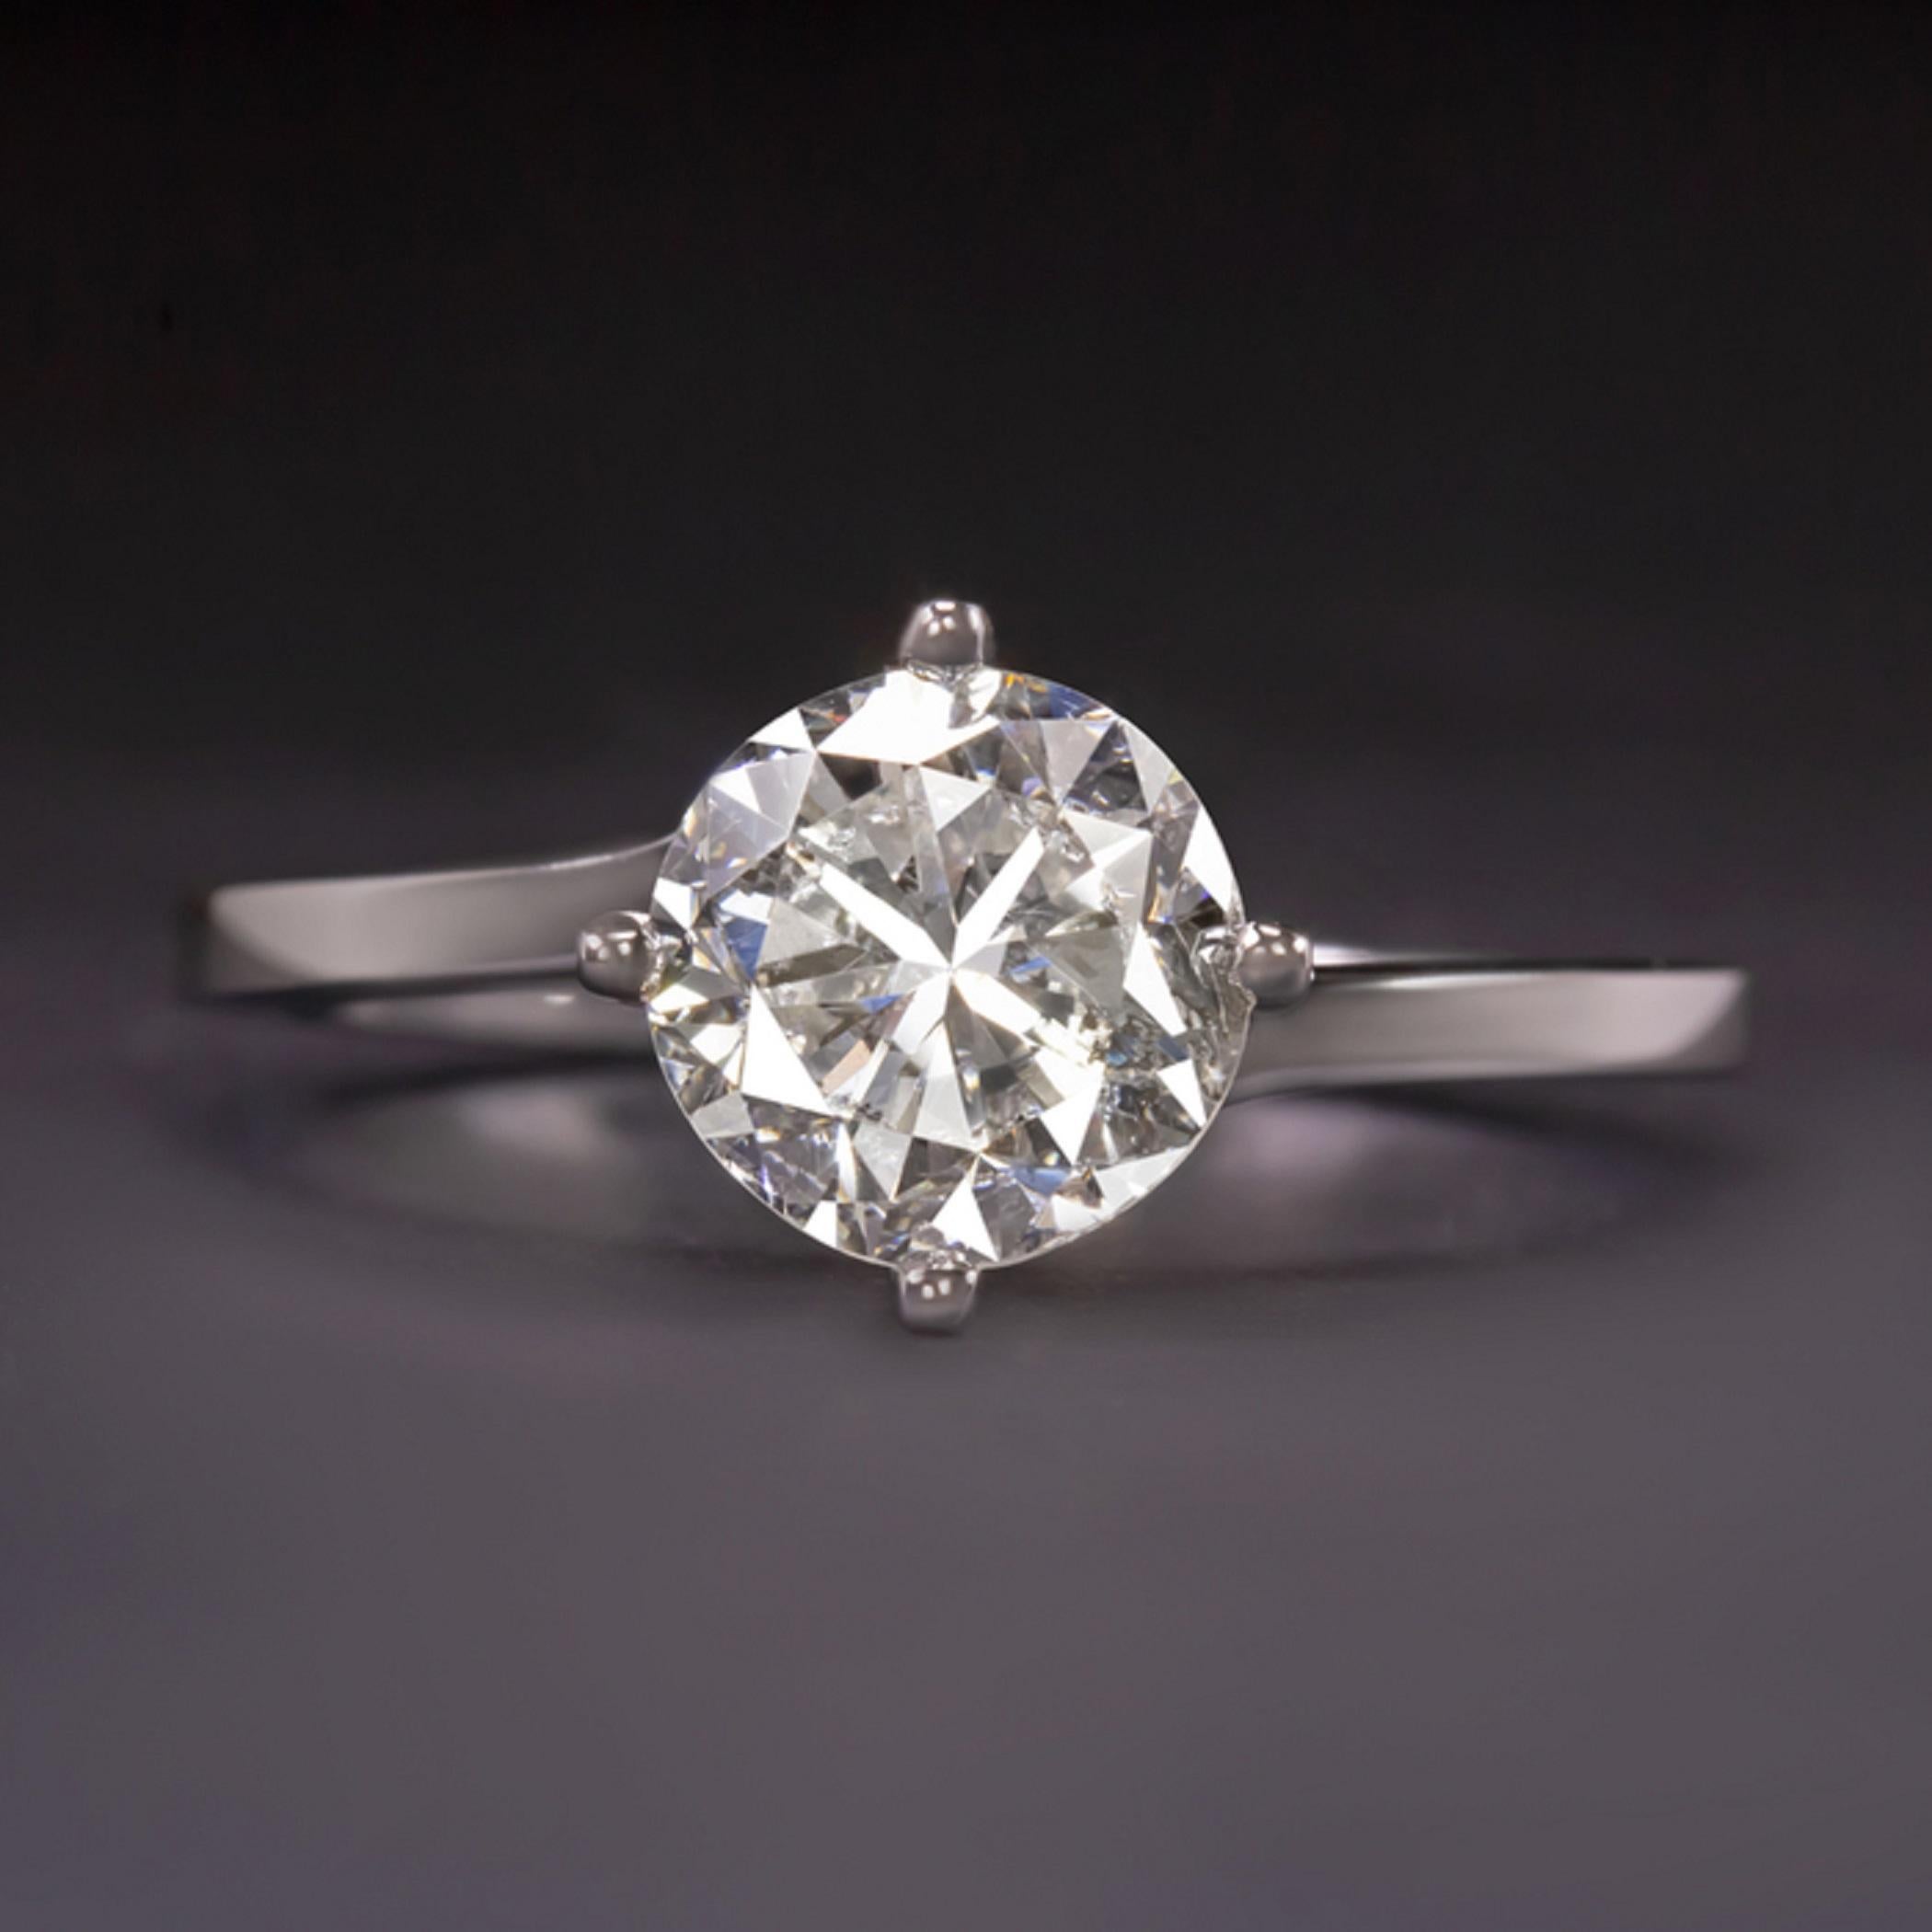 2.02 carat diamond ring price